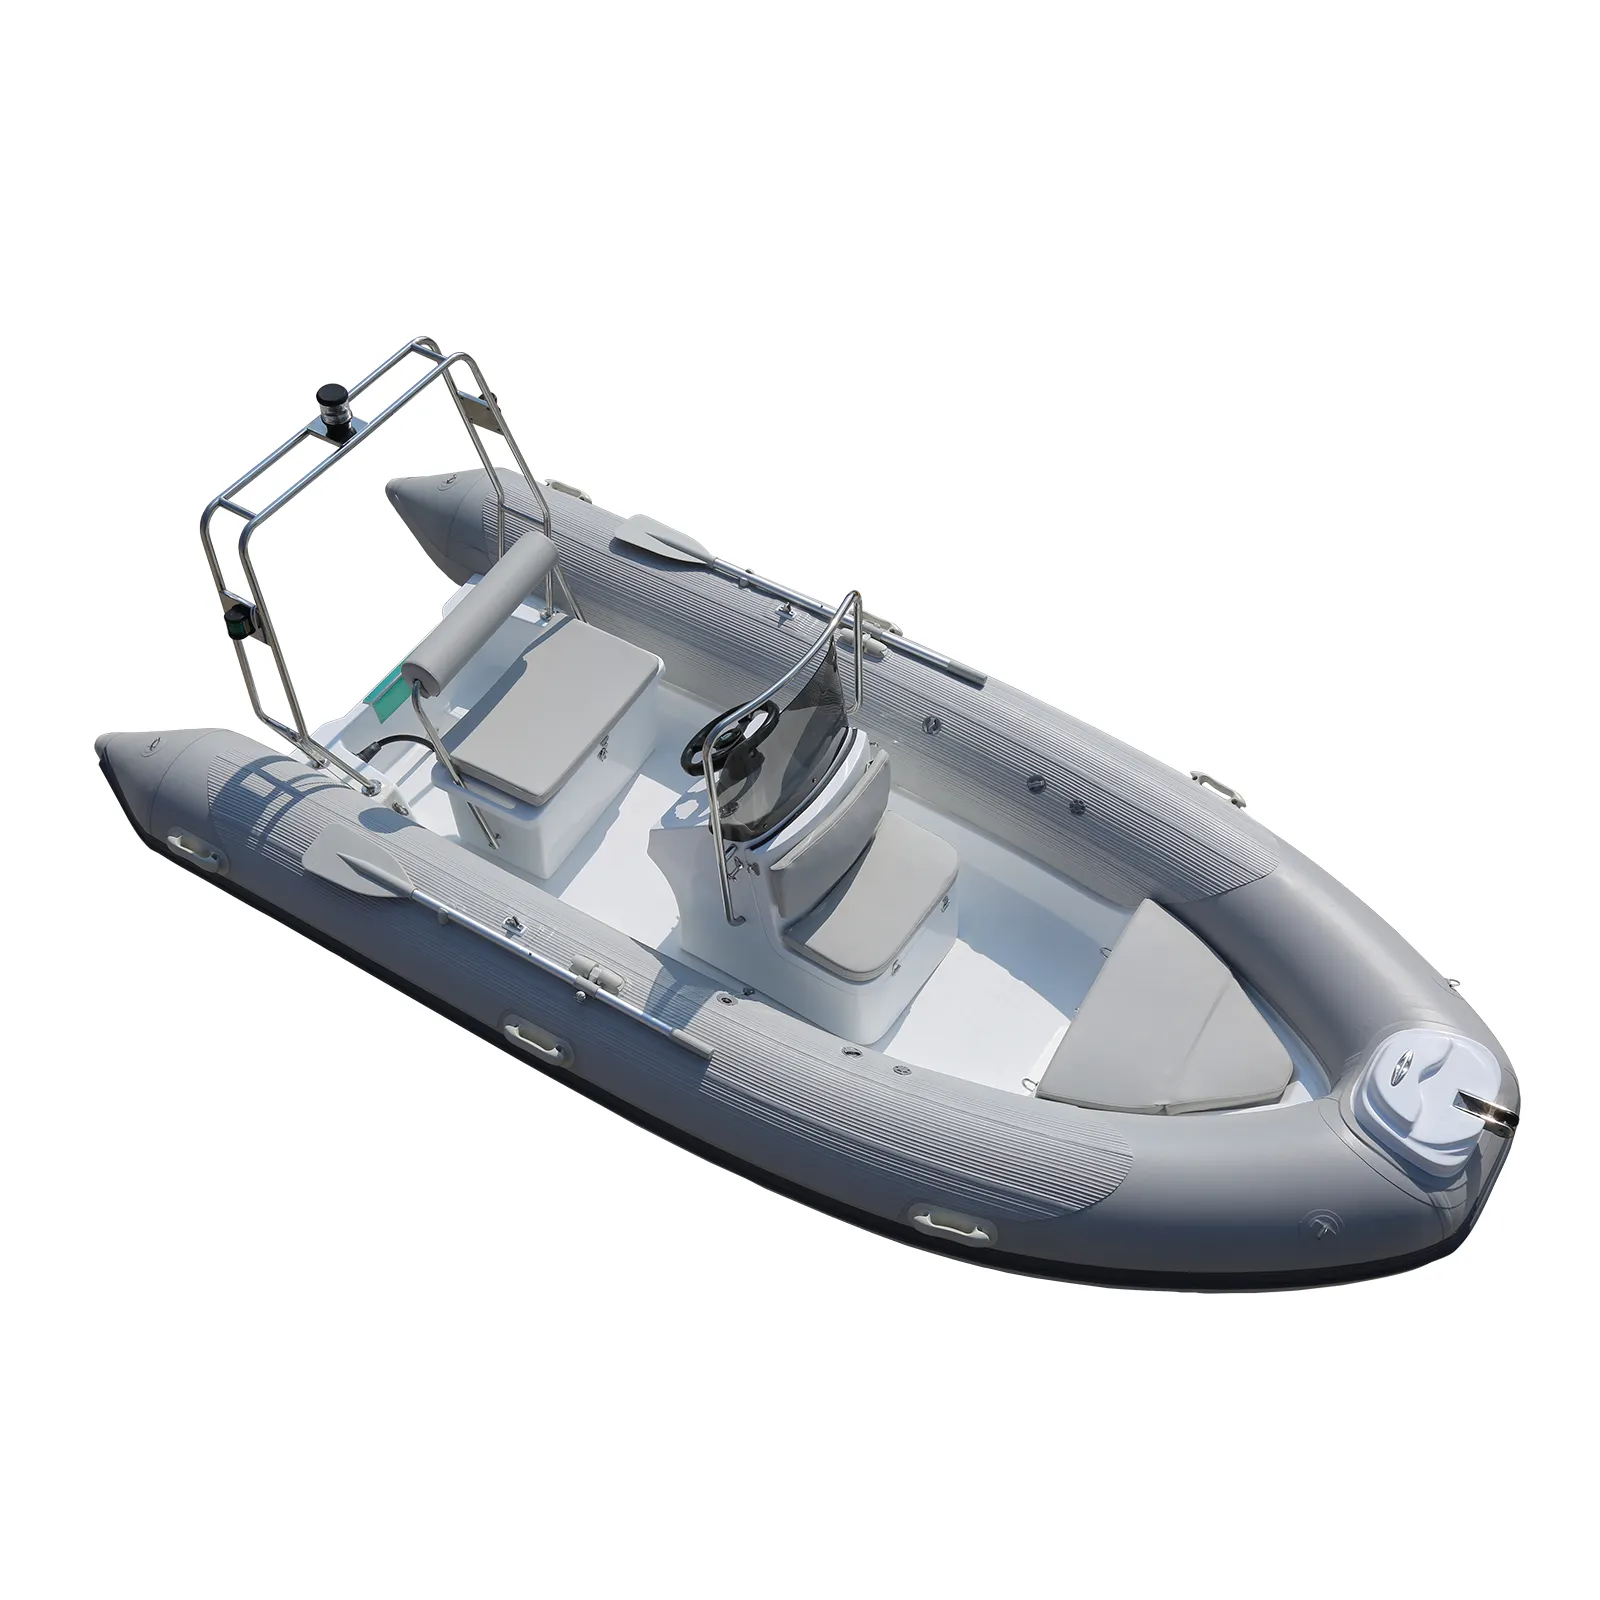 Ce sườn 430 rigide gonflable ponton đạp tuần tra Inflatable sườn thuyền động cơ trôi hoạt động ngoài trời chèo thuyền thể loại